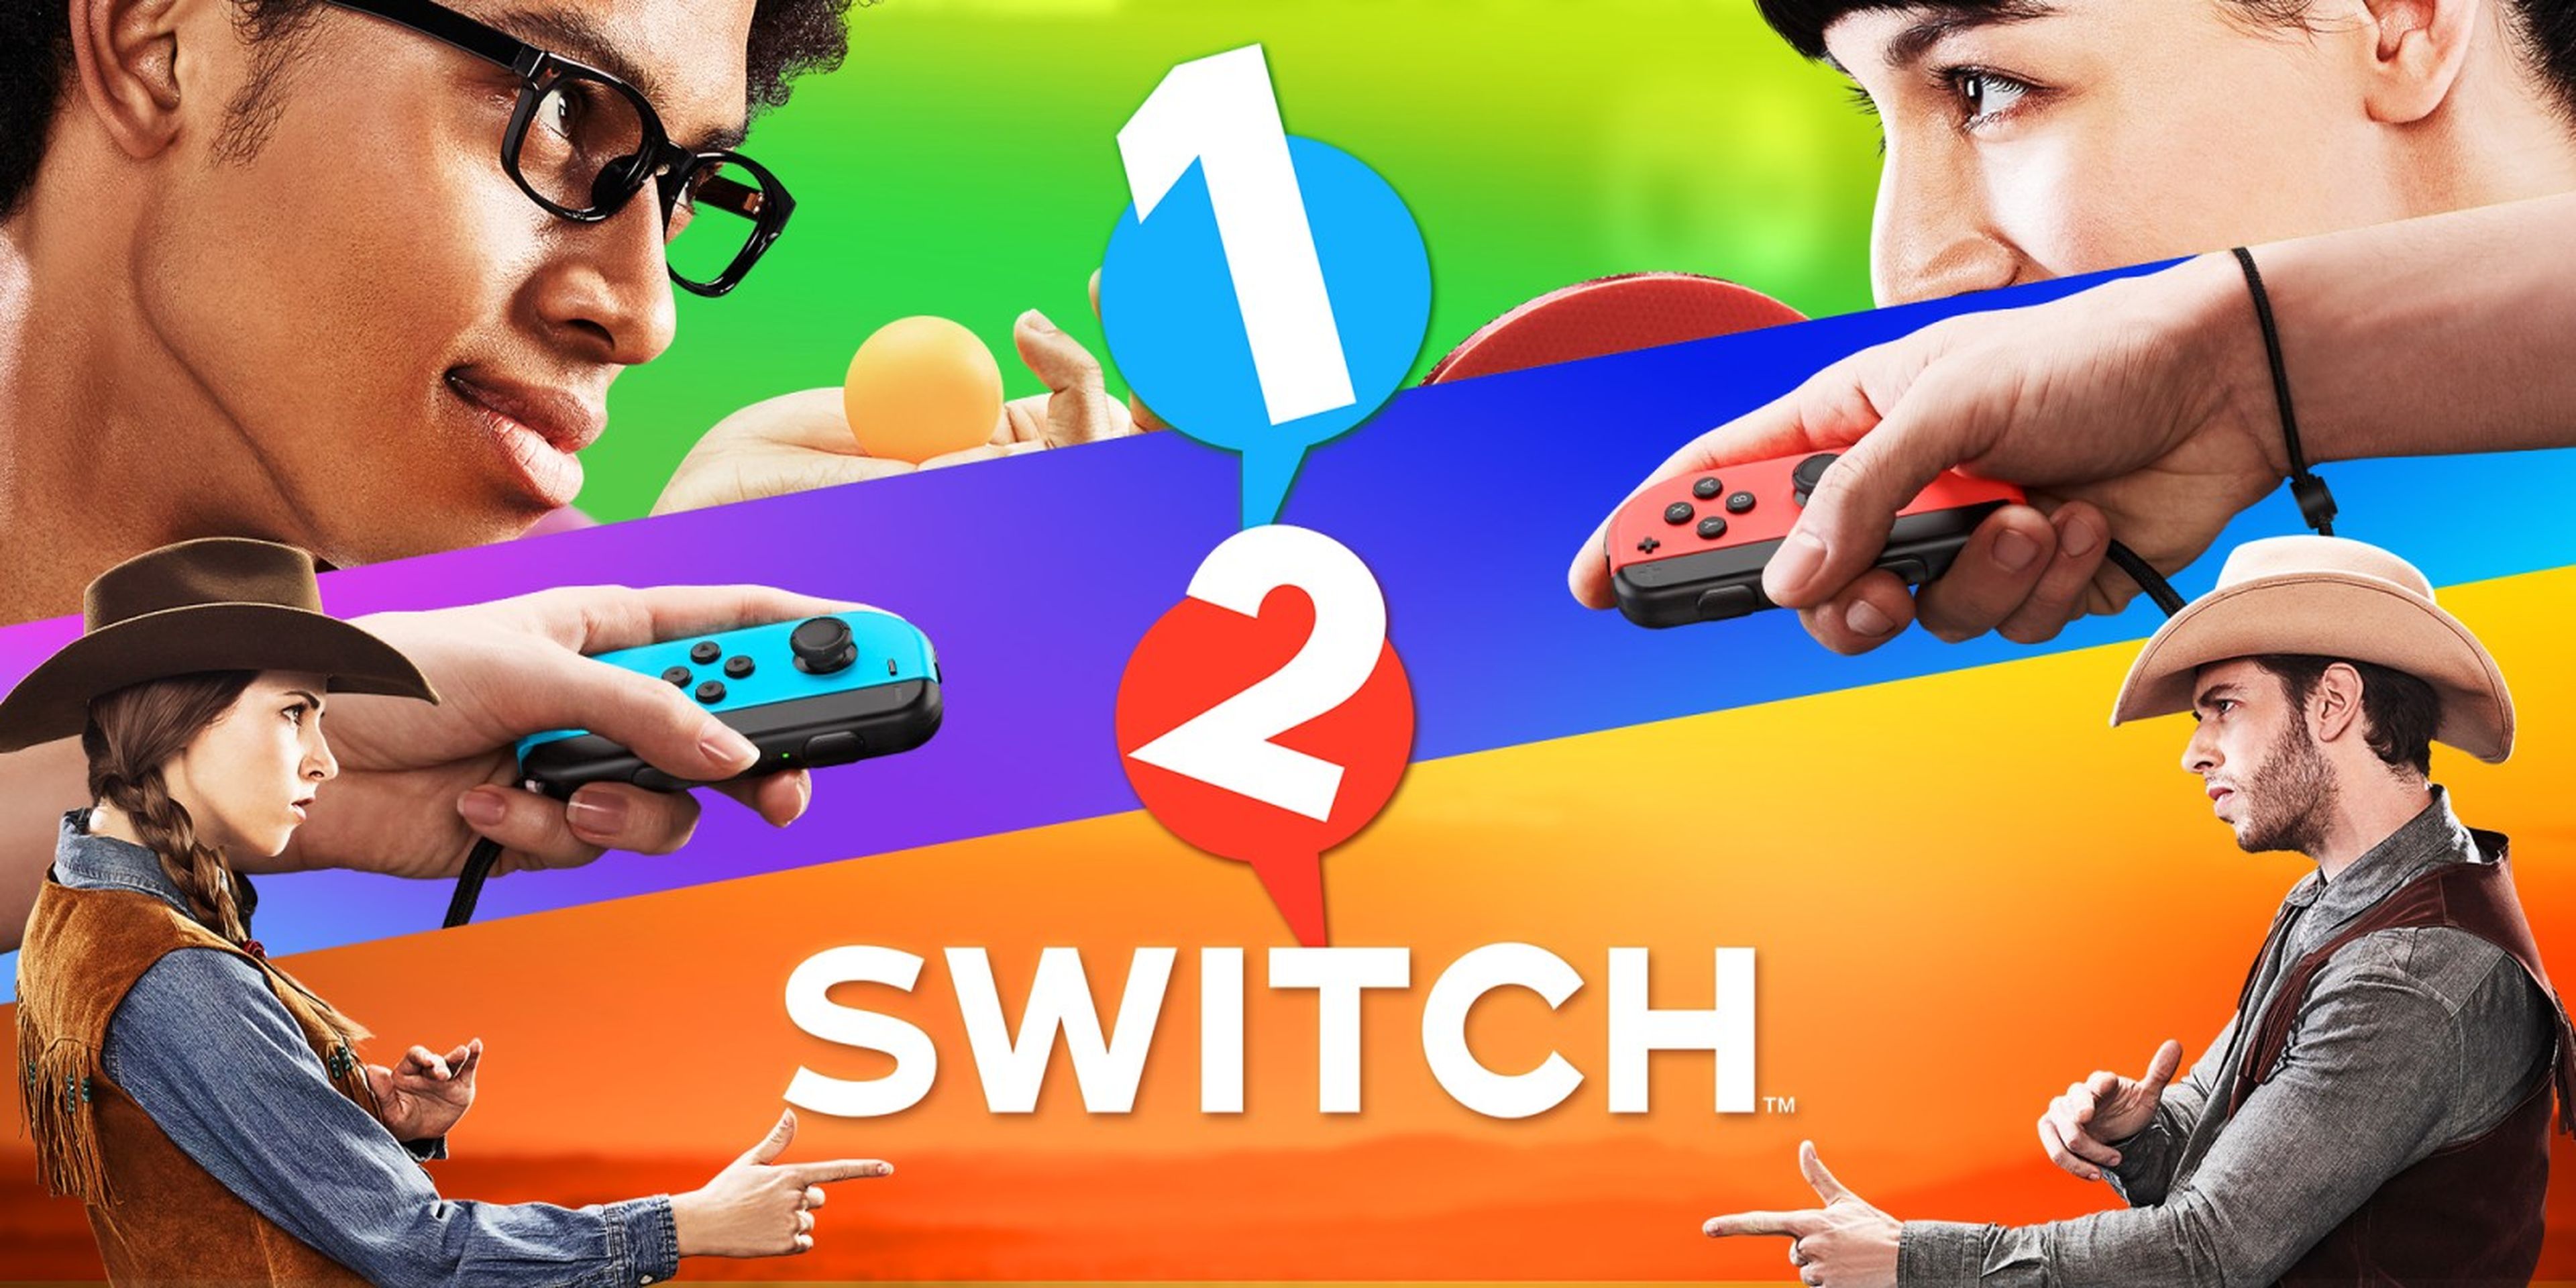 1, 2, Switch